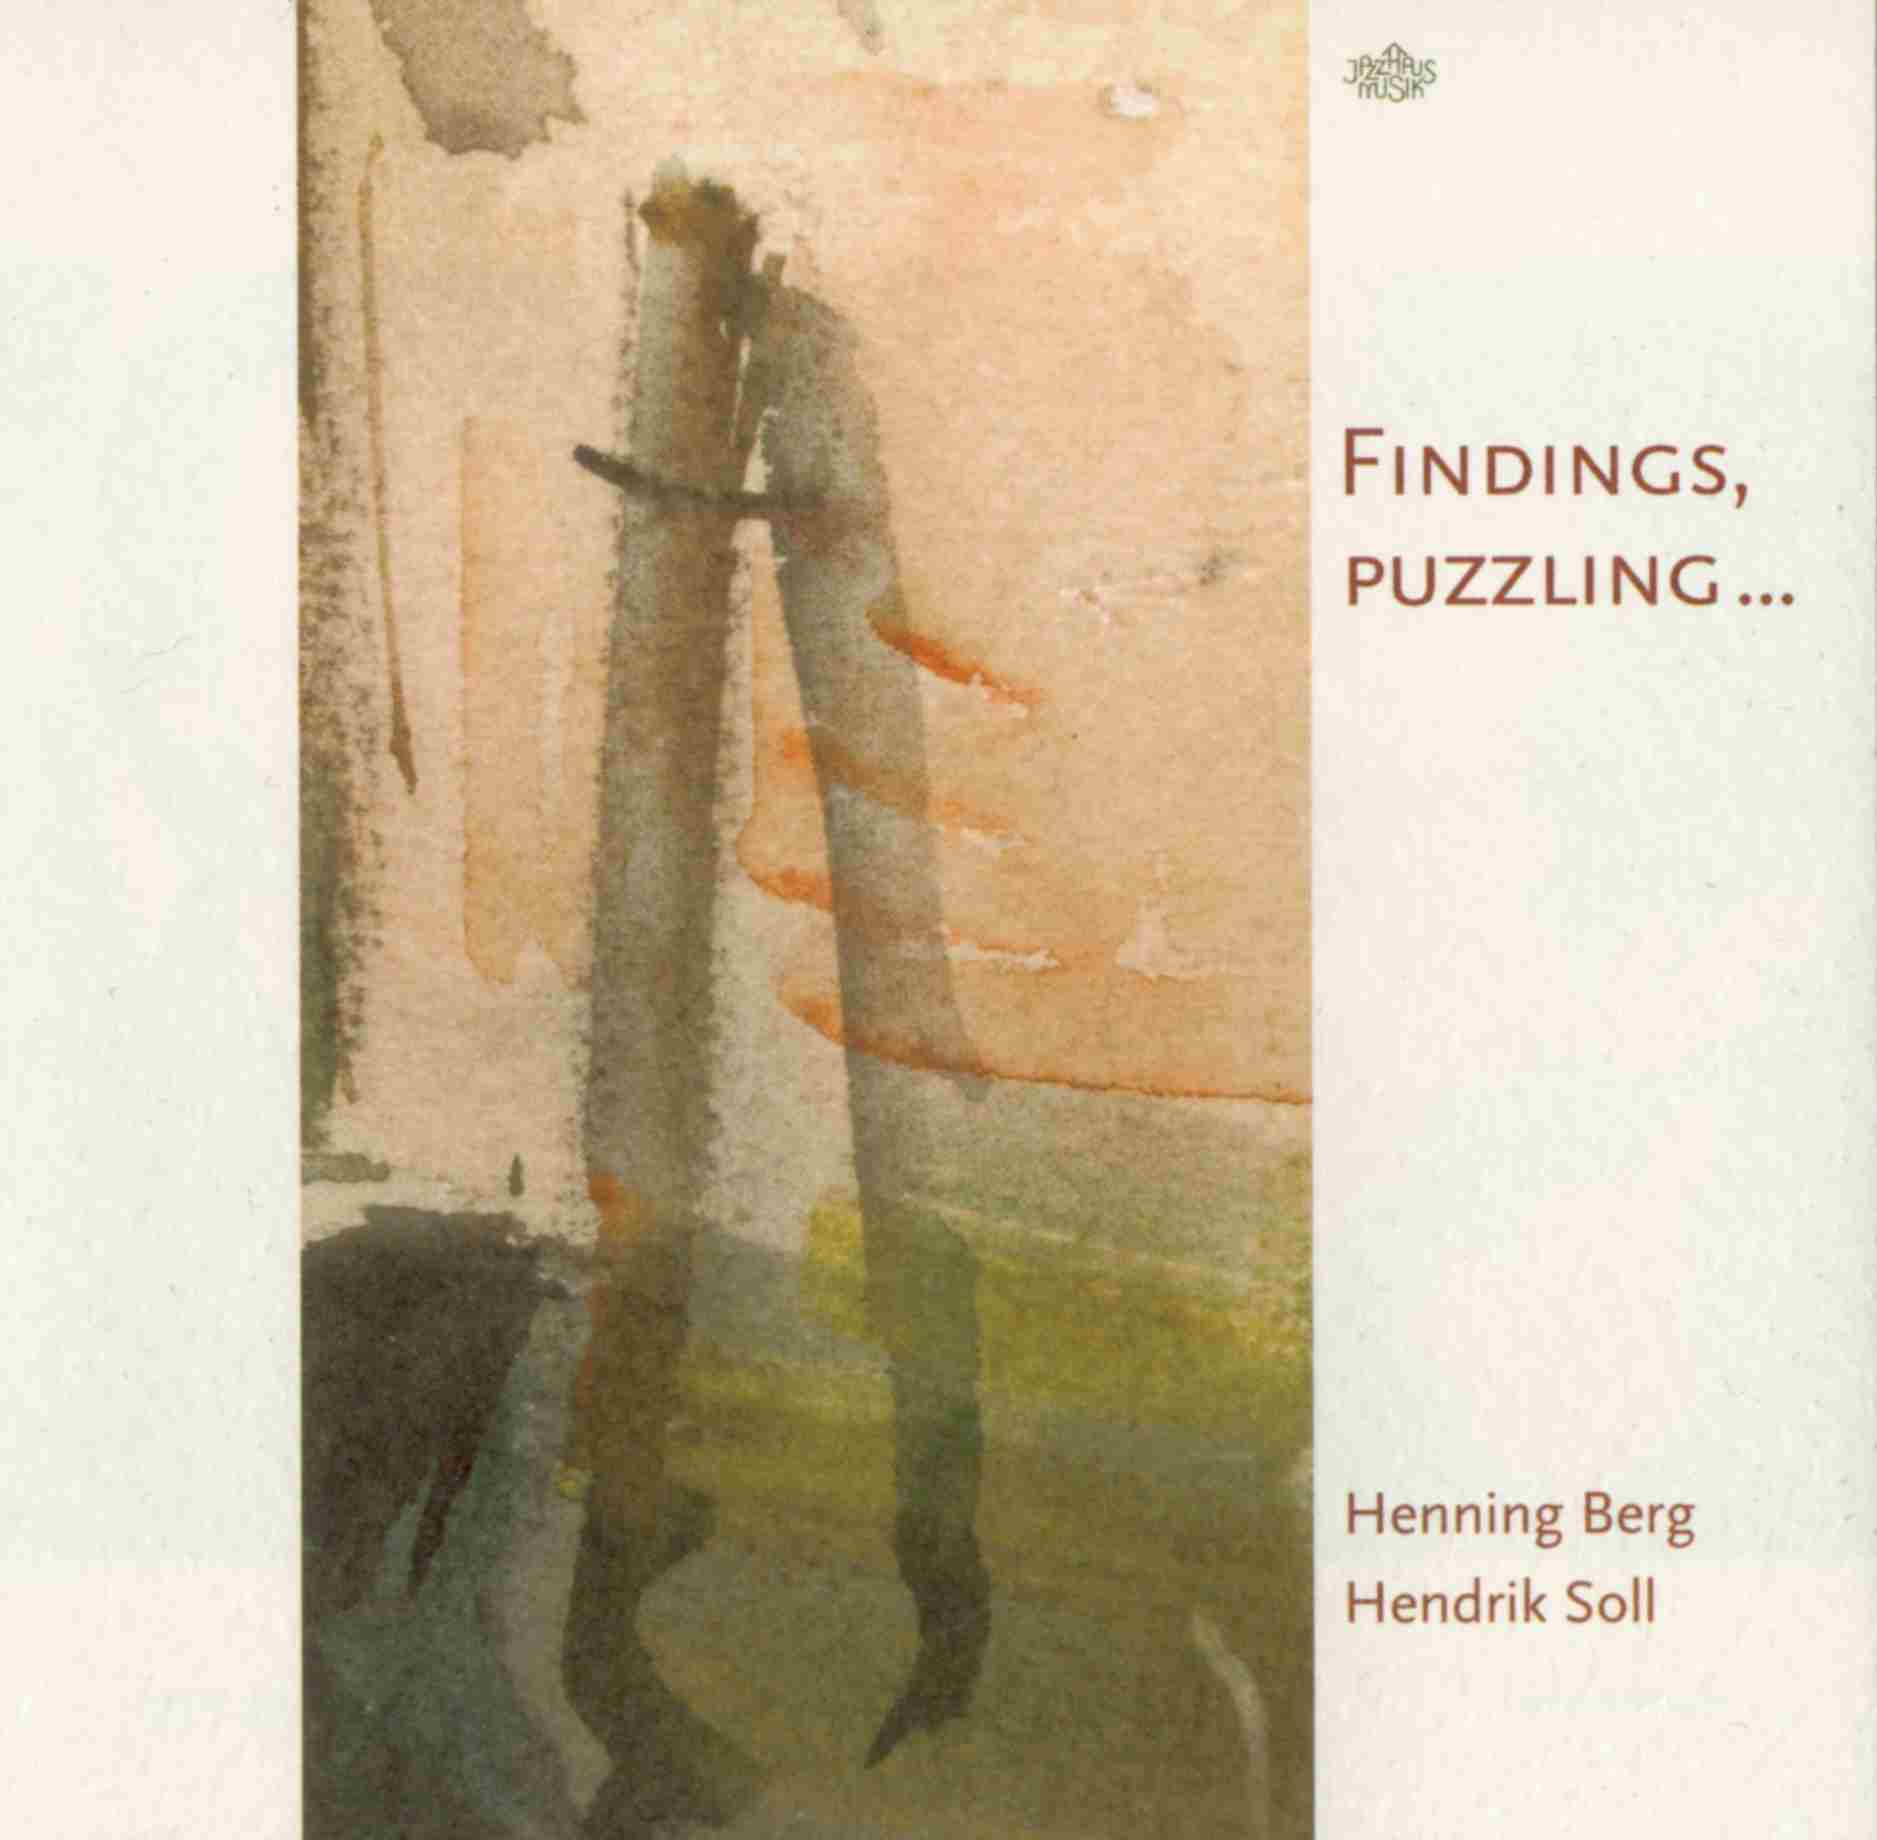 Bild von der CD Henning Berg (tb), Hendrik Soll (p) - Findings, puzzling...